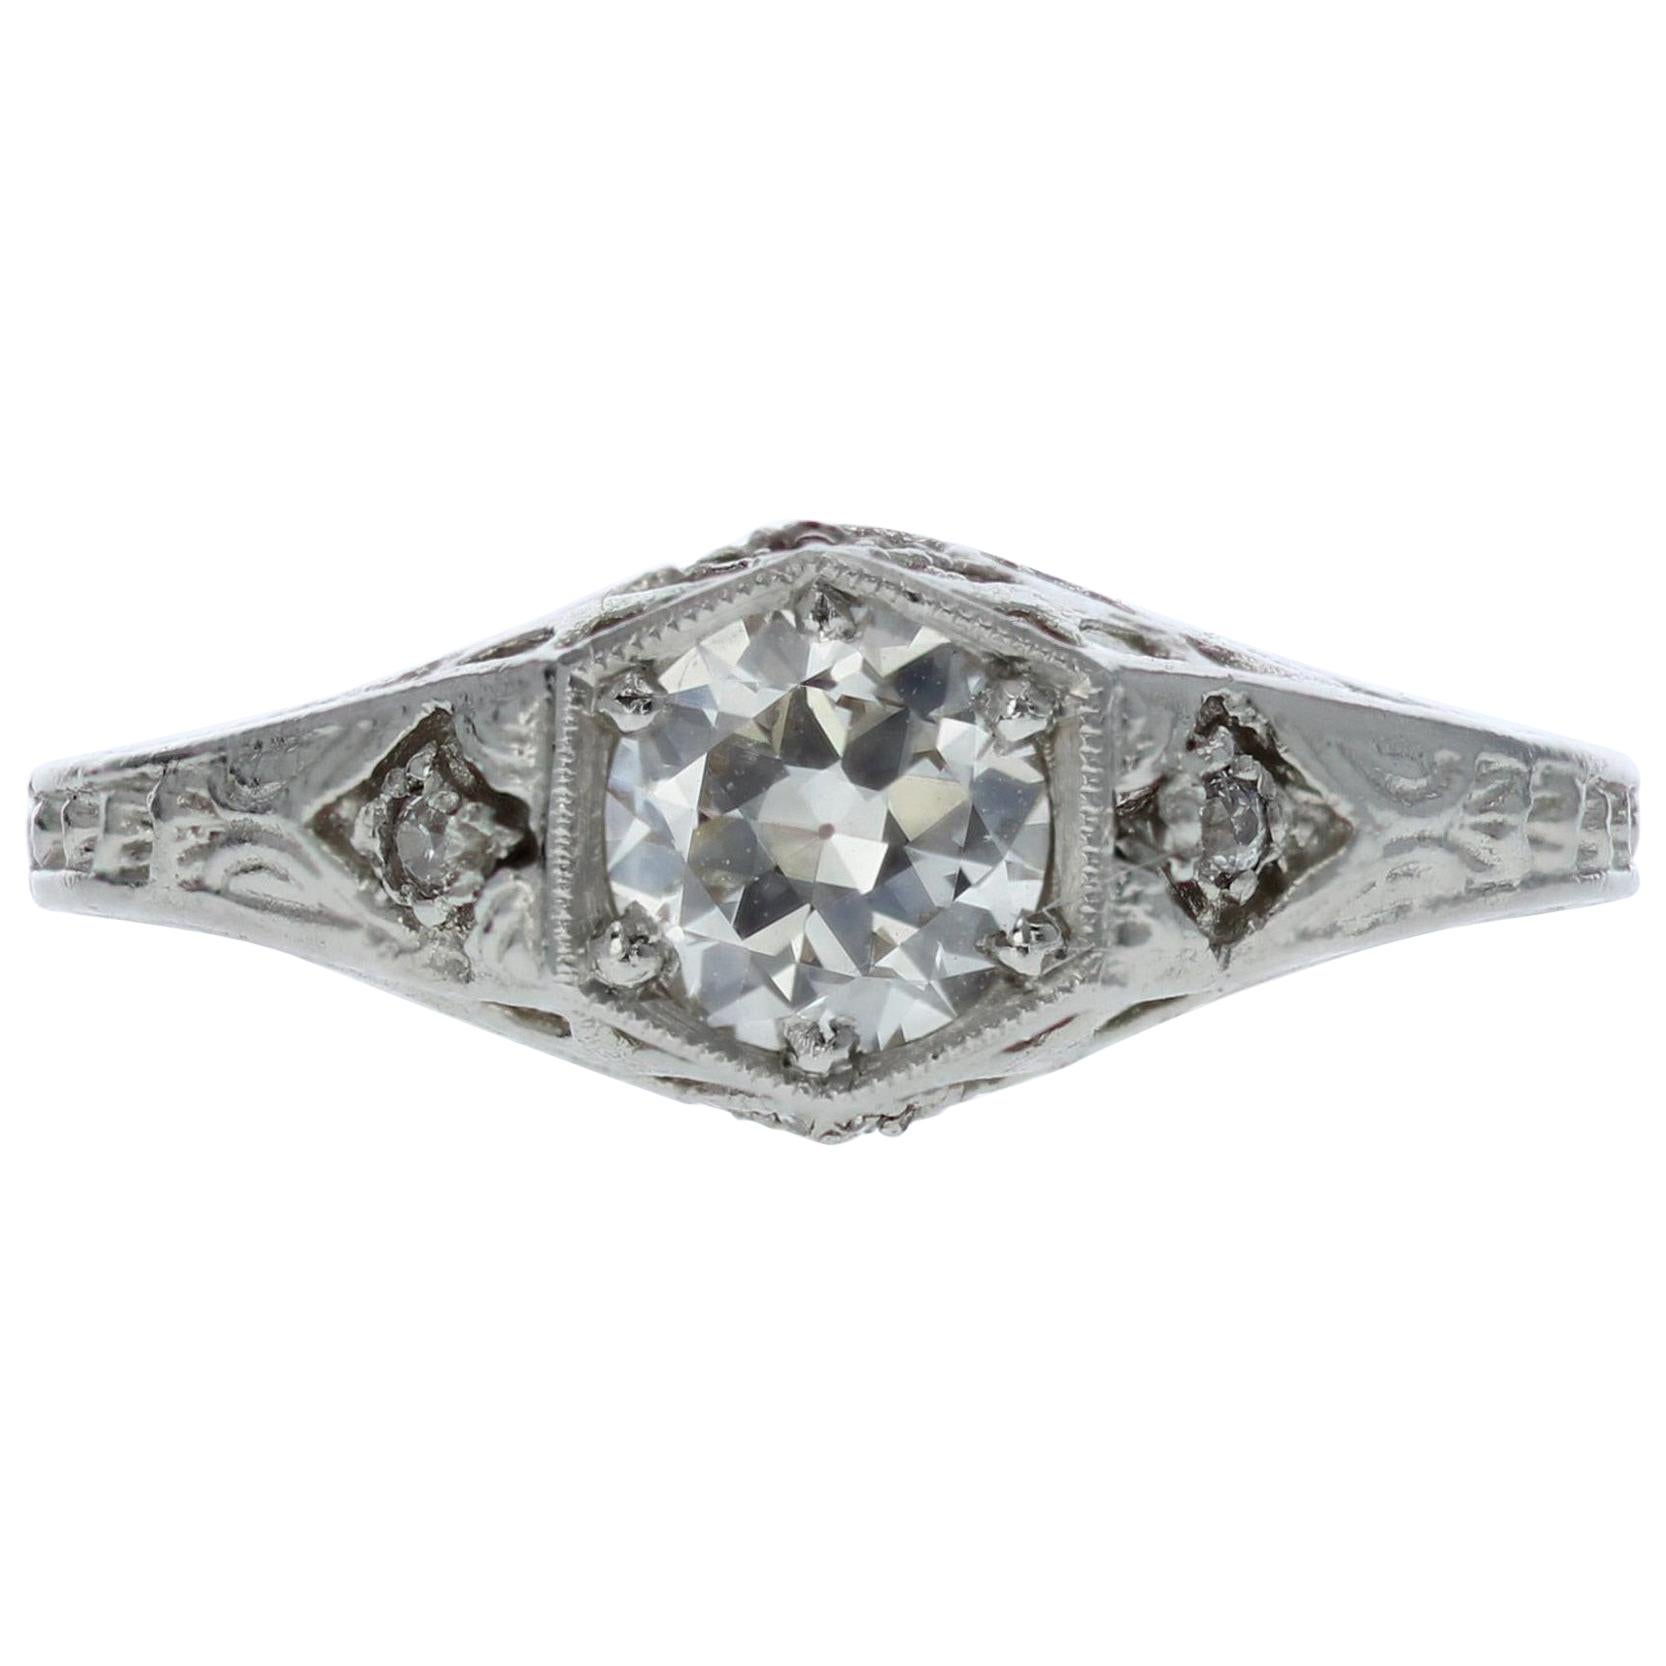 Edwardian Diamond Engagement Ring 'GIA Certified'